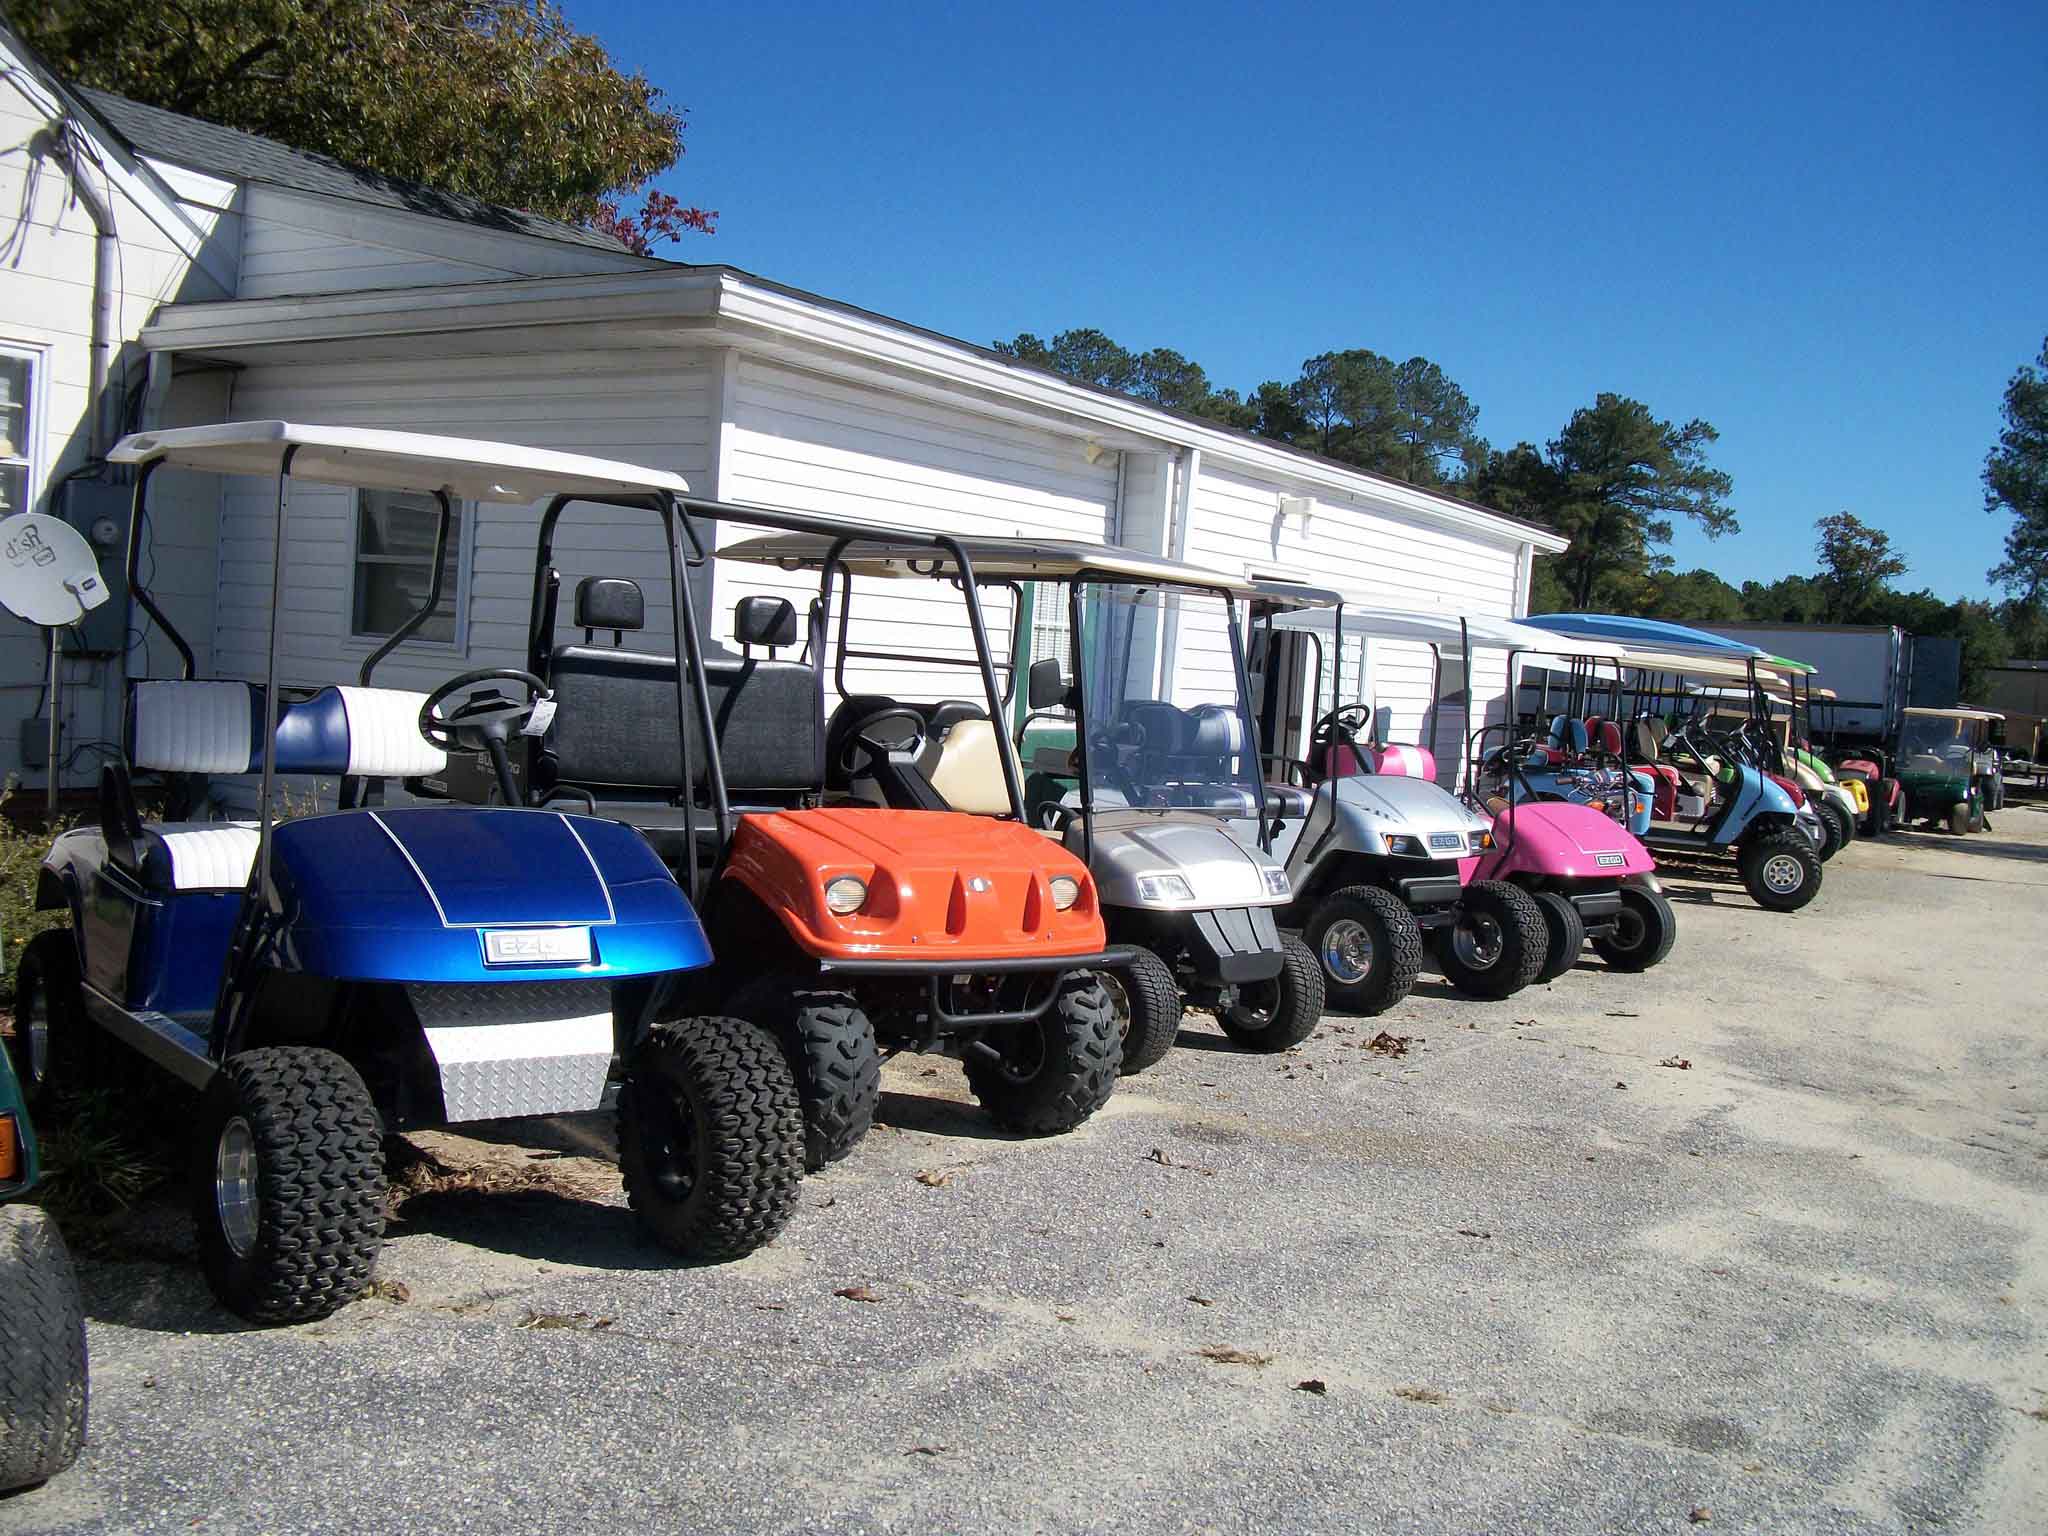 Row of Golf cars